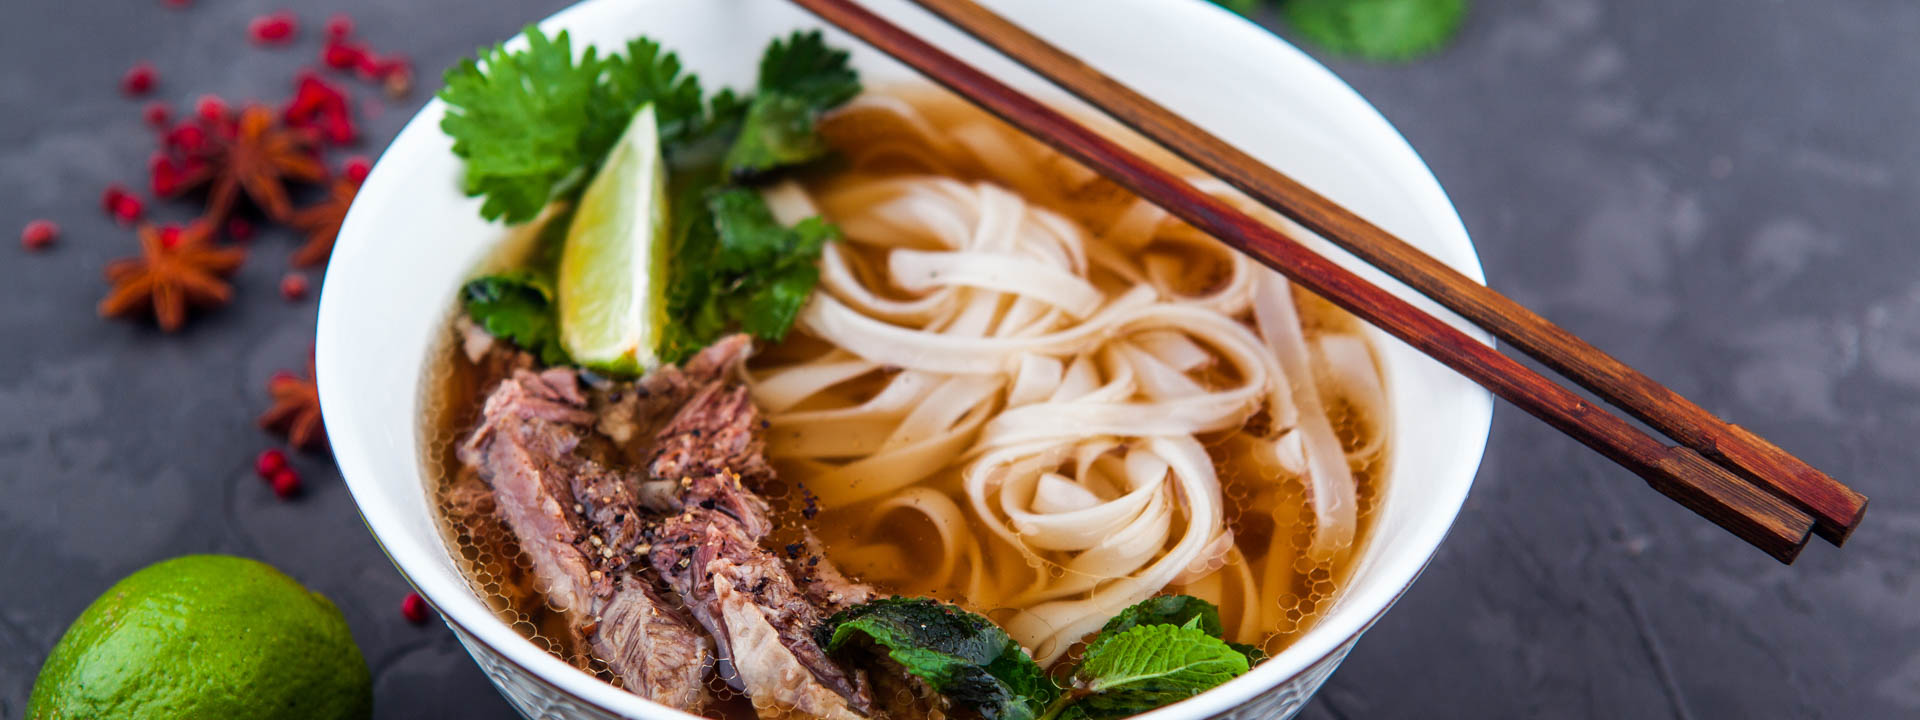 Descubrir la cultura y gastronomía de Vietnam 11 días